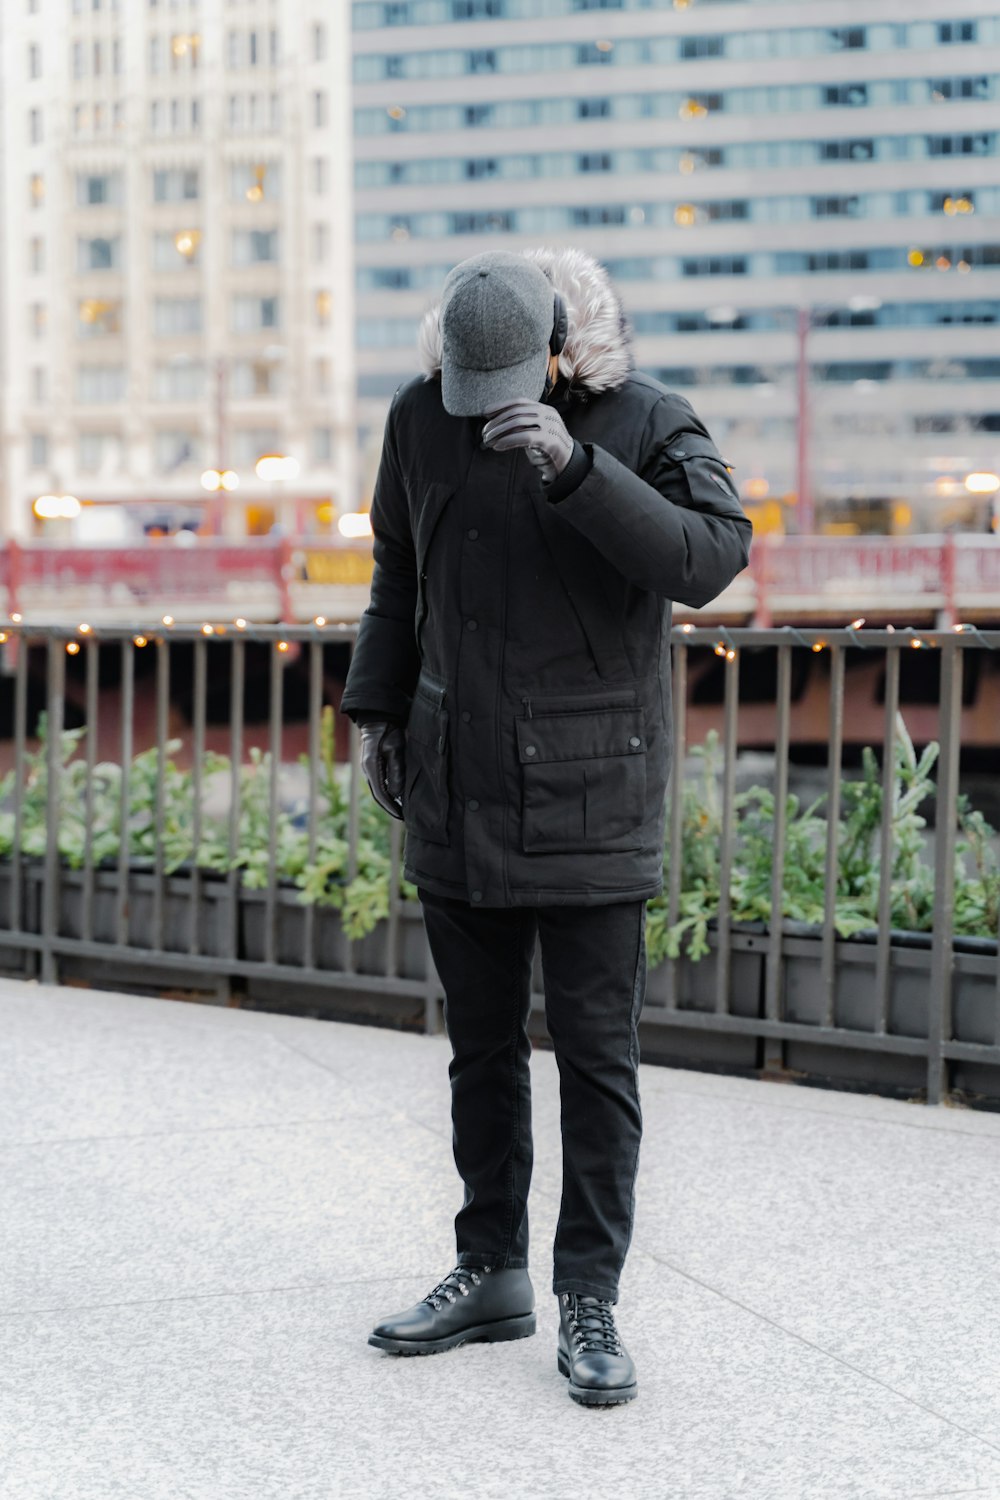 Mann in schwarzer Jacke und schwarzer Hose tagsüber auf dem Bürgersteig